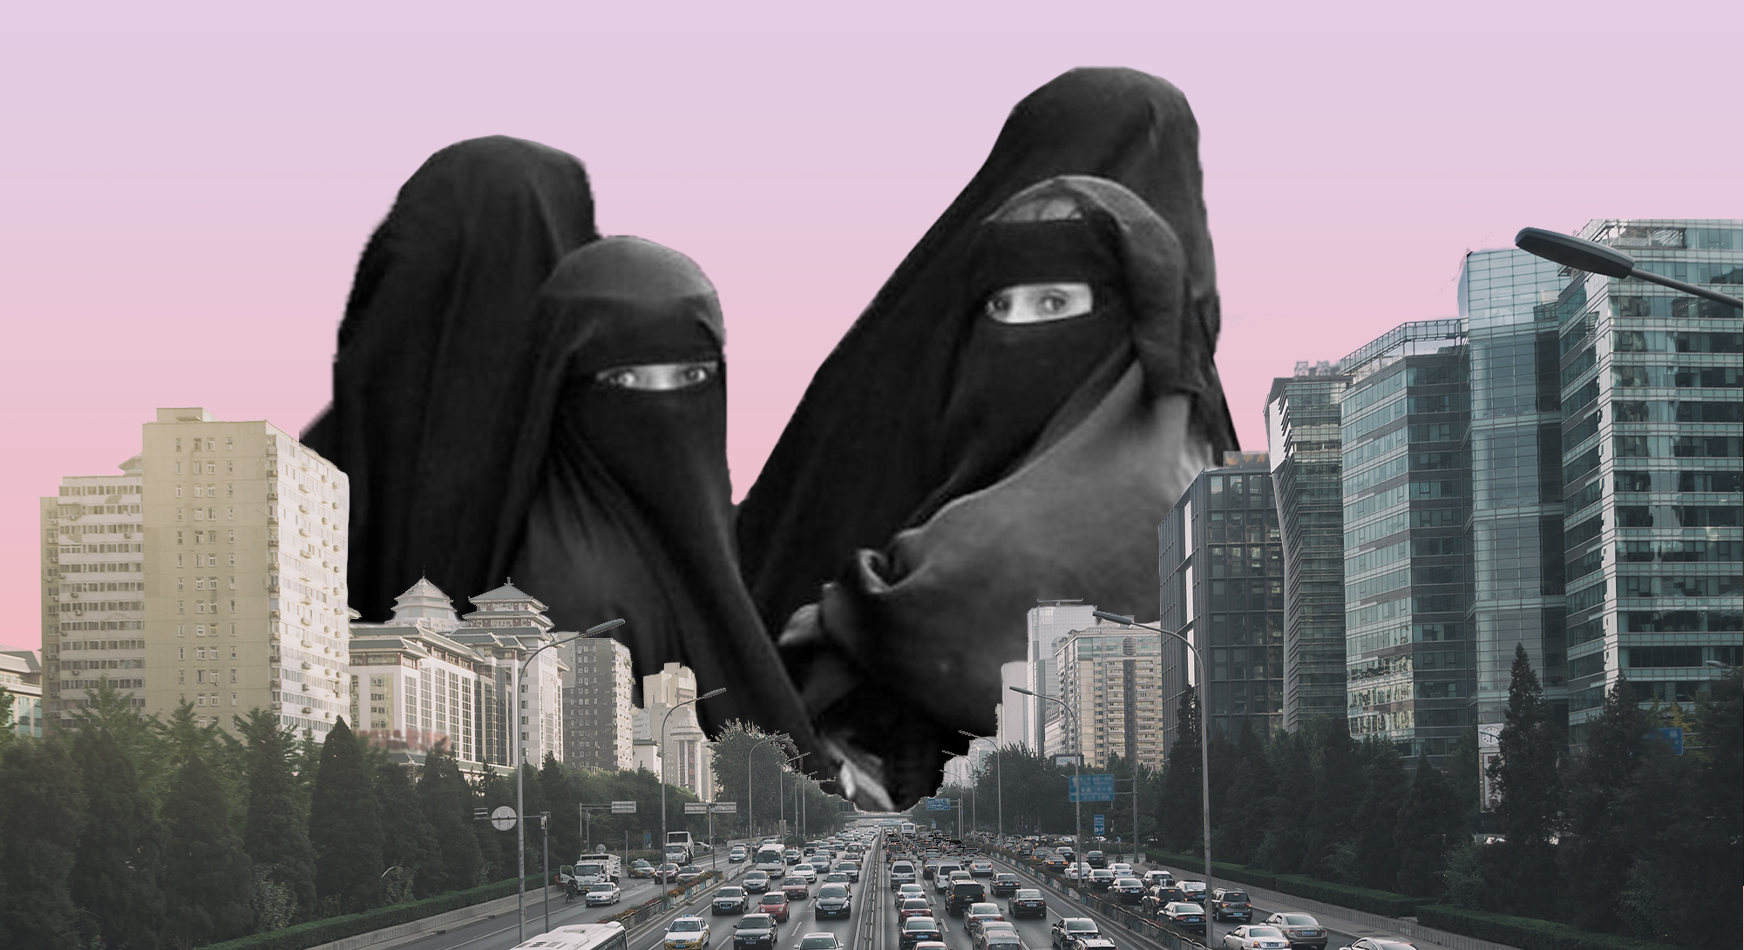 تعميم حوثي يمنع تنقل النساء دون وصي أو موافقة أمنية